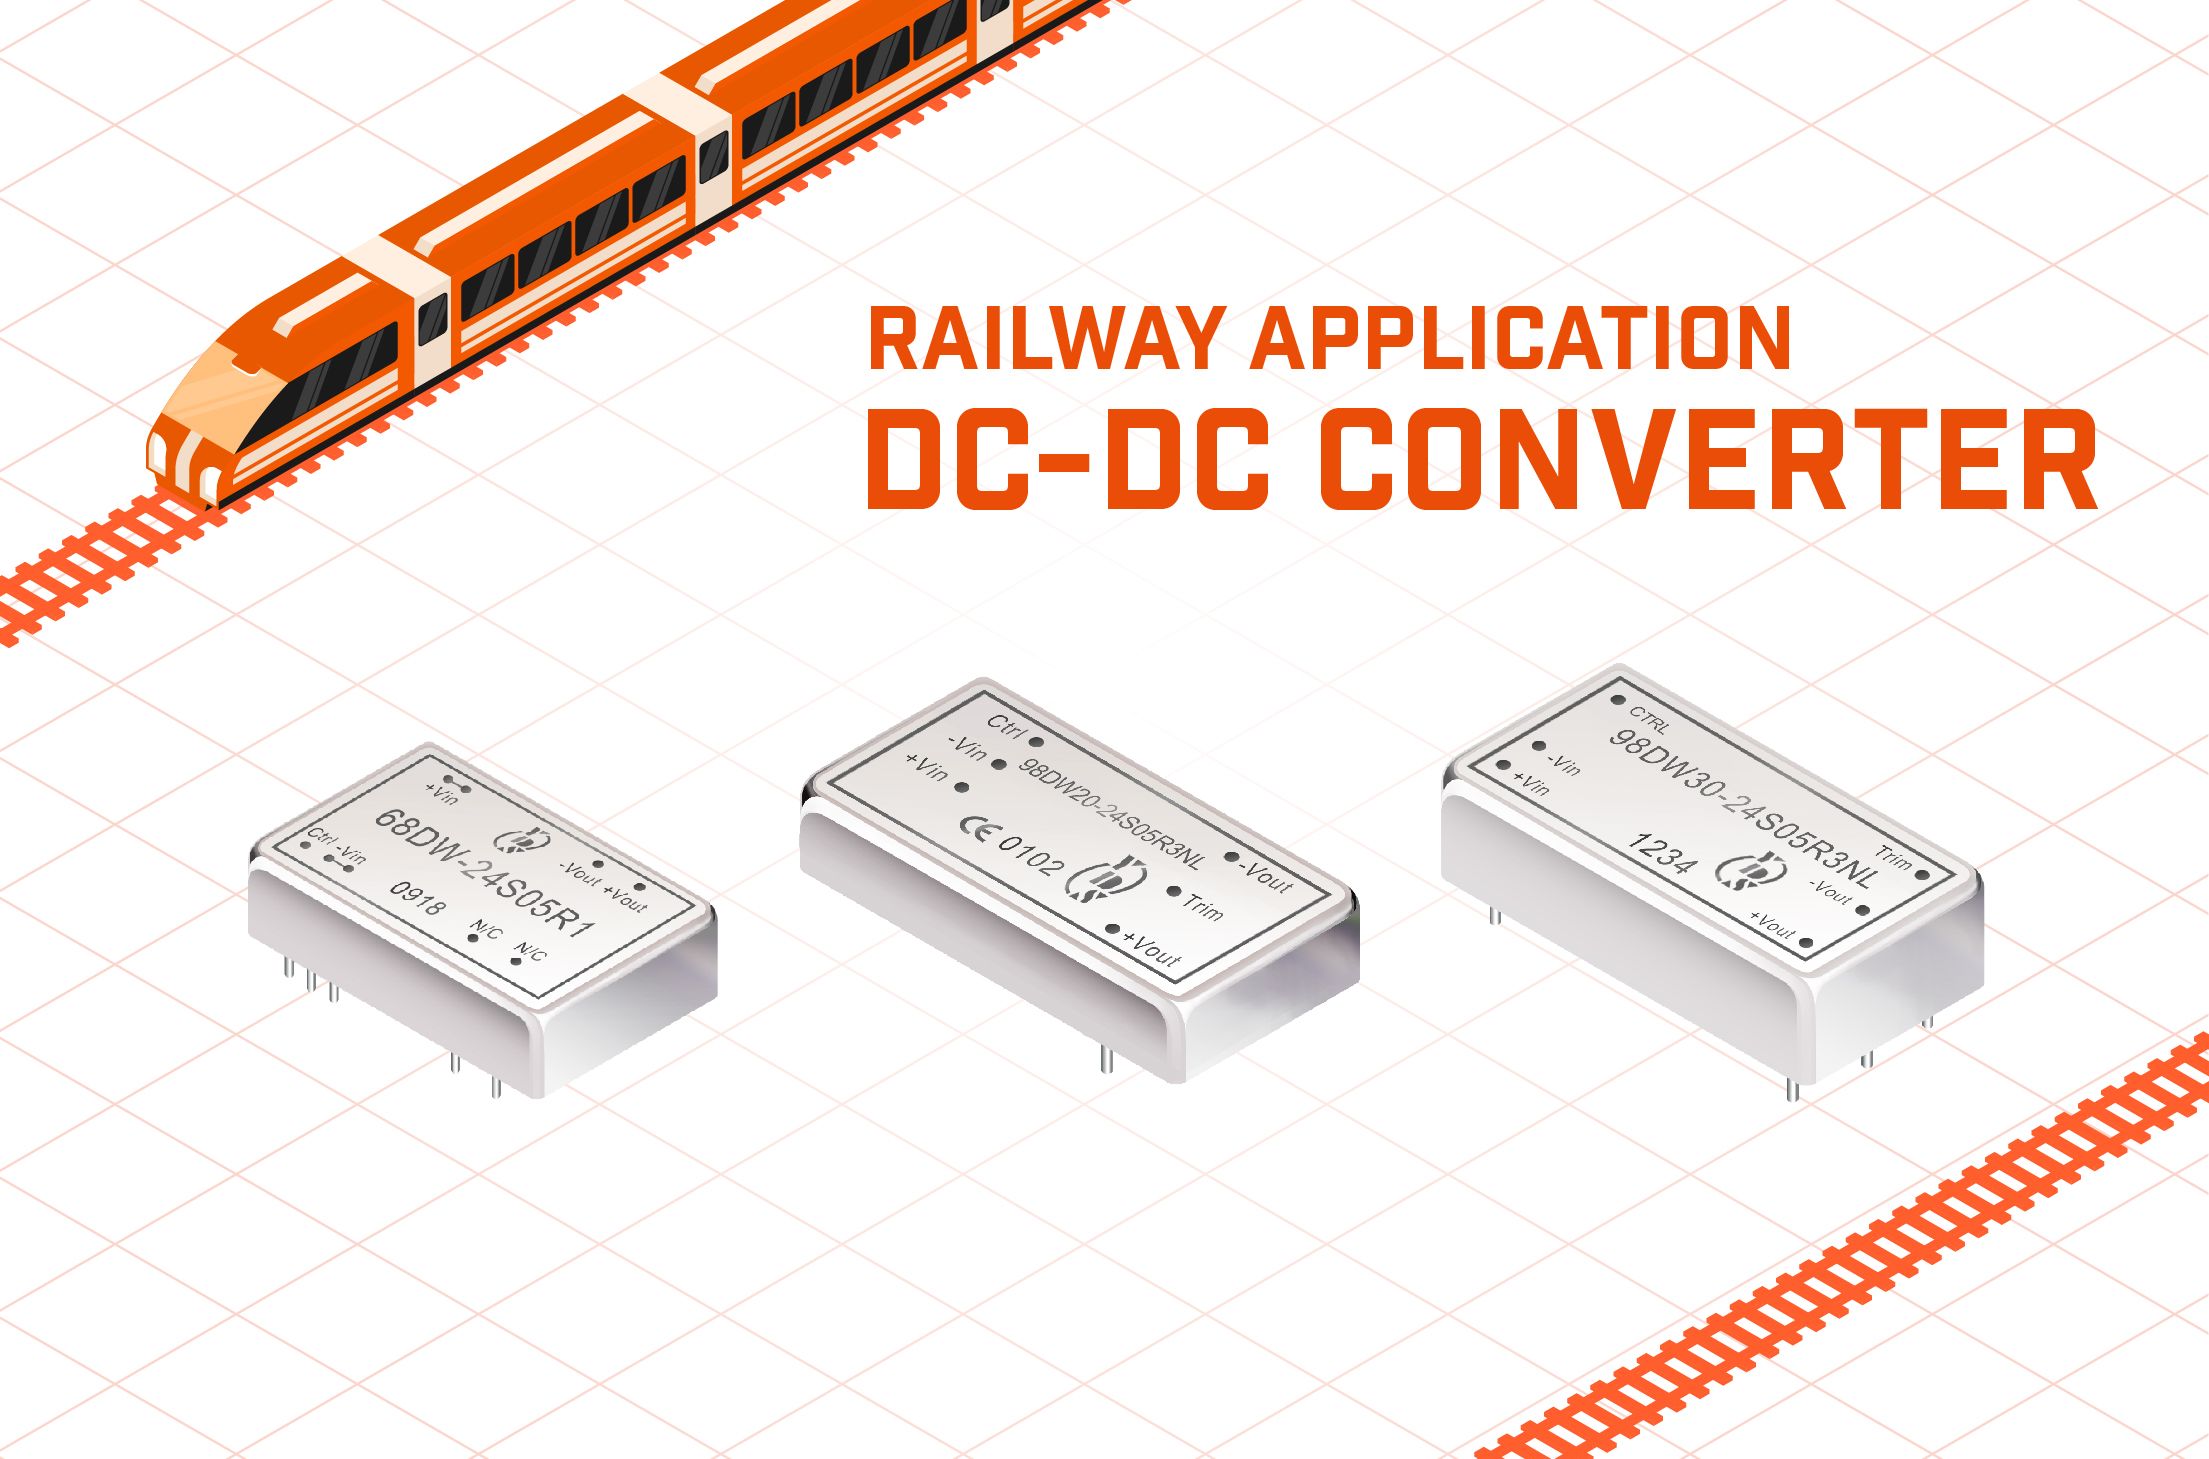 Convertisseur DC-DC pour application ferroviaire